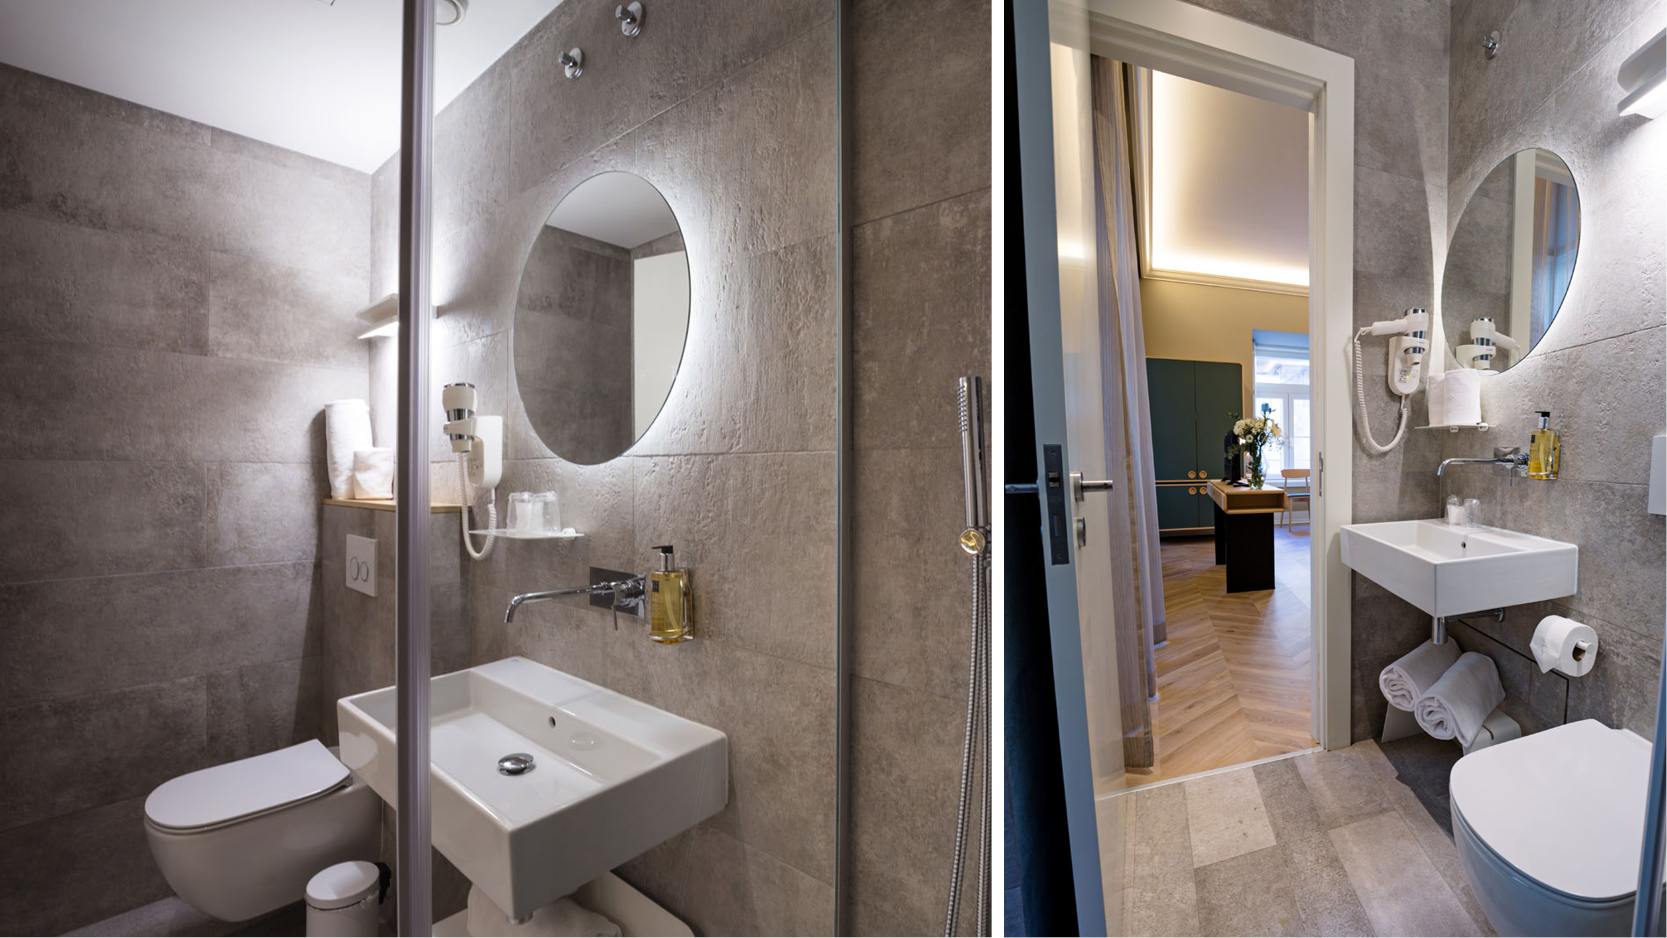 Badrum med dusch och ljust sovrum p det nyppnade hotellet My Story Hotel Tejo, Lissabon.